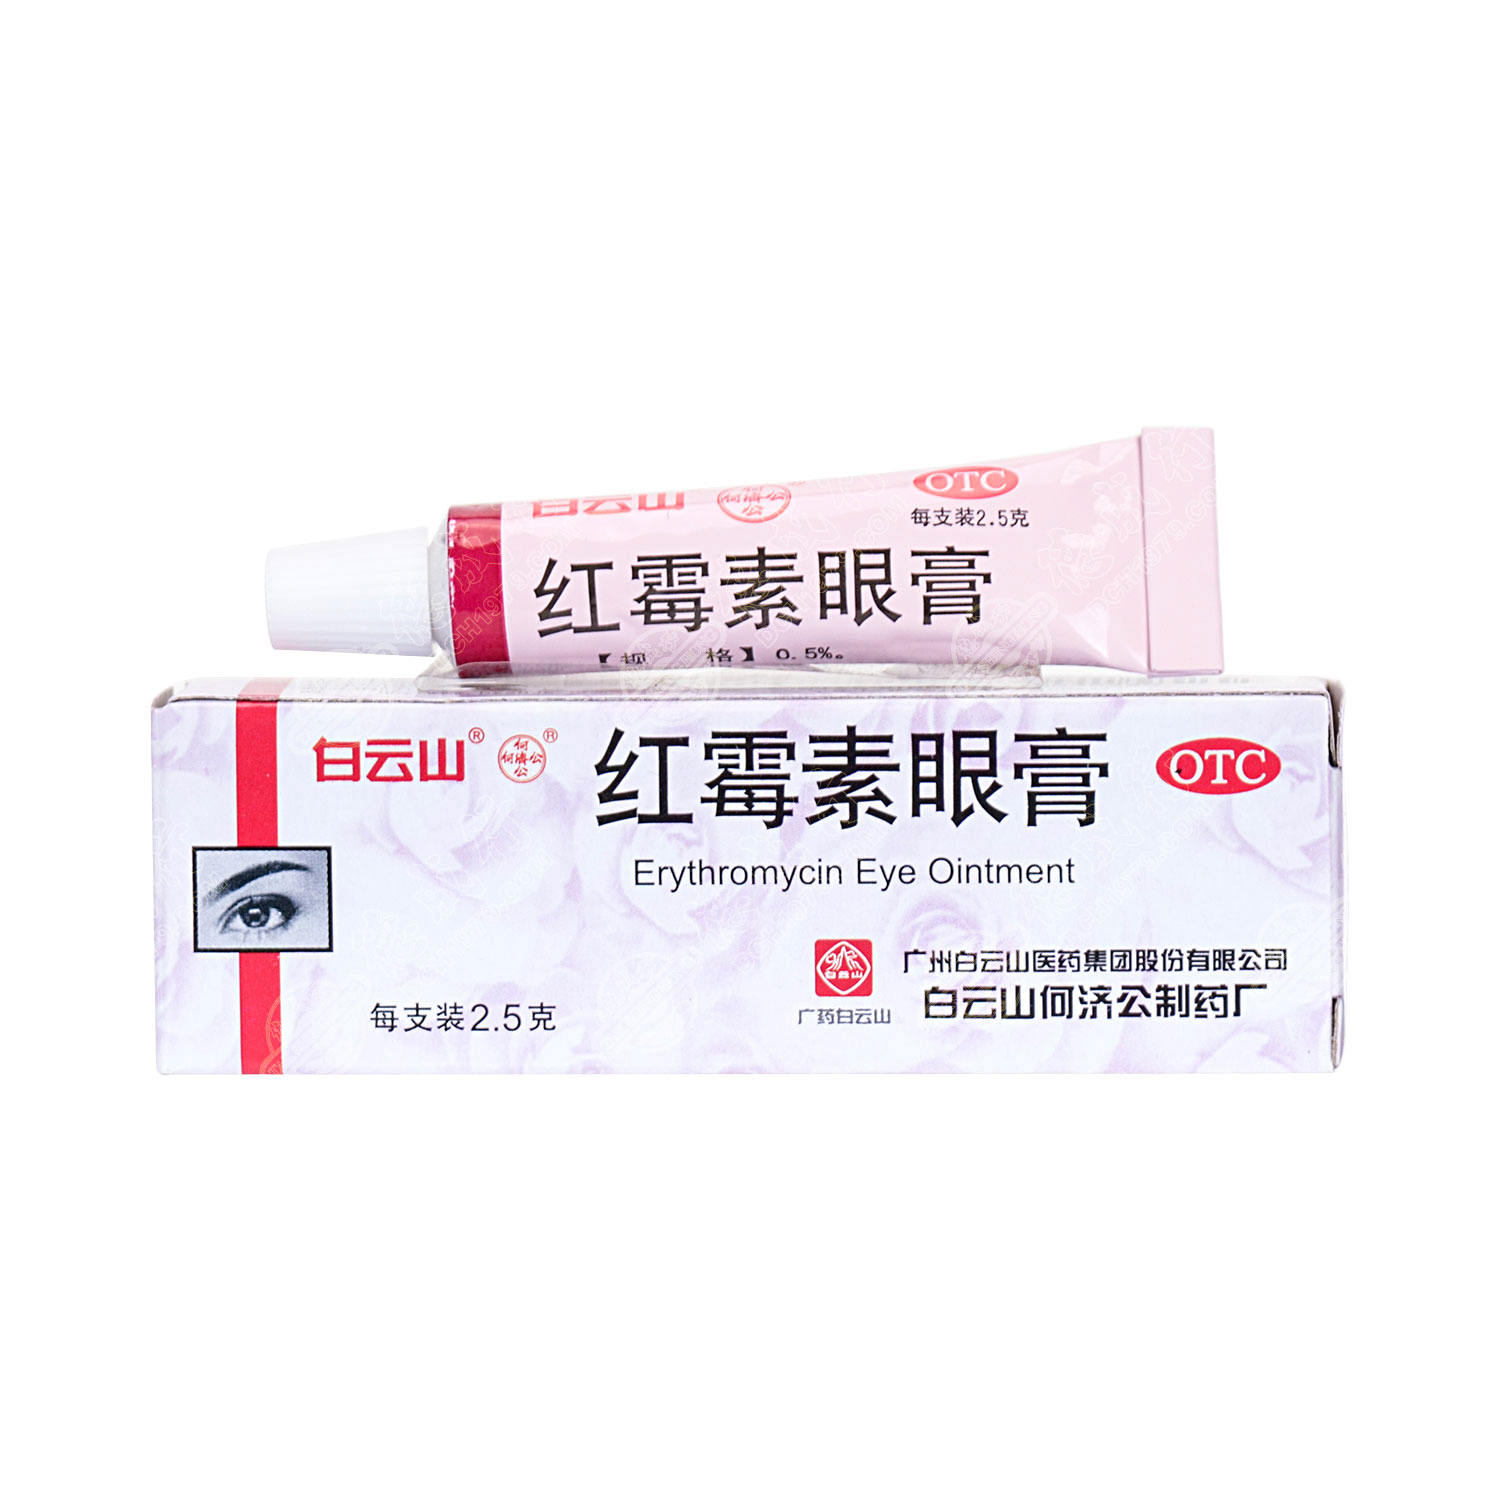 红霉素眼膏(白敬宇)价格-说明书-功效与作用-副作用-39药品通